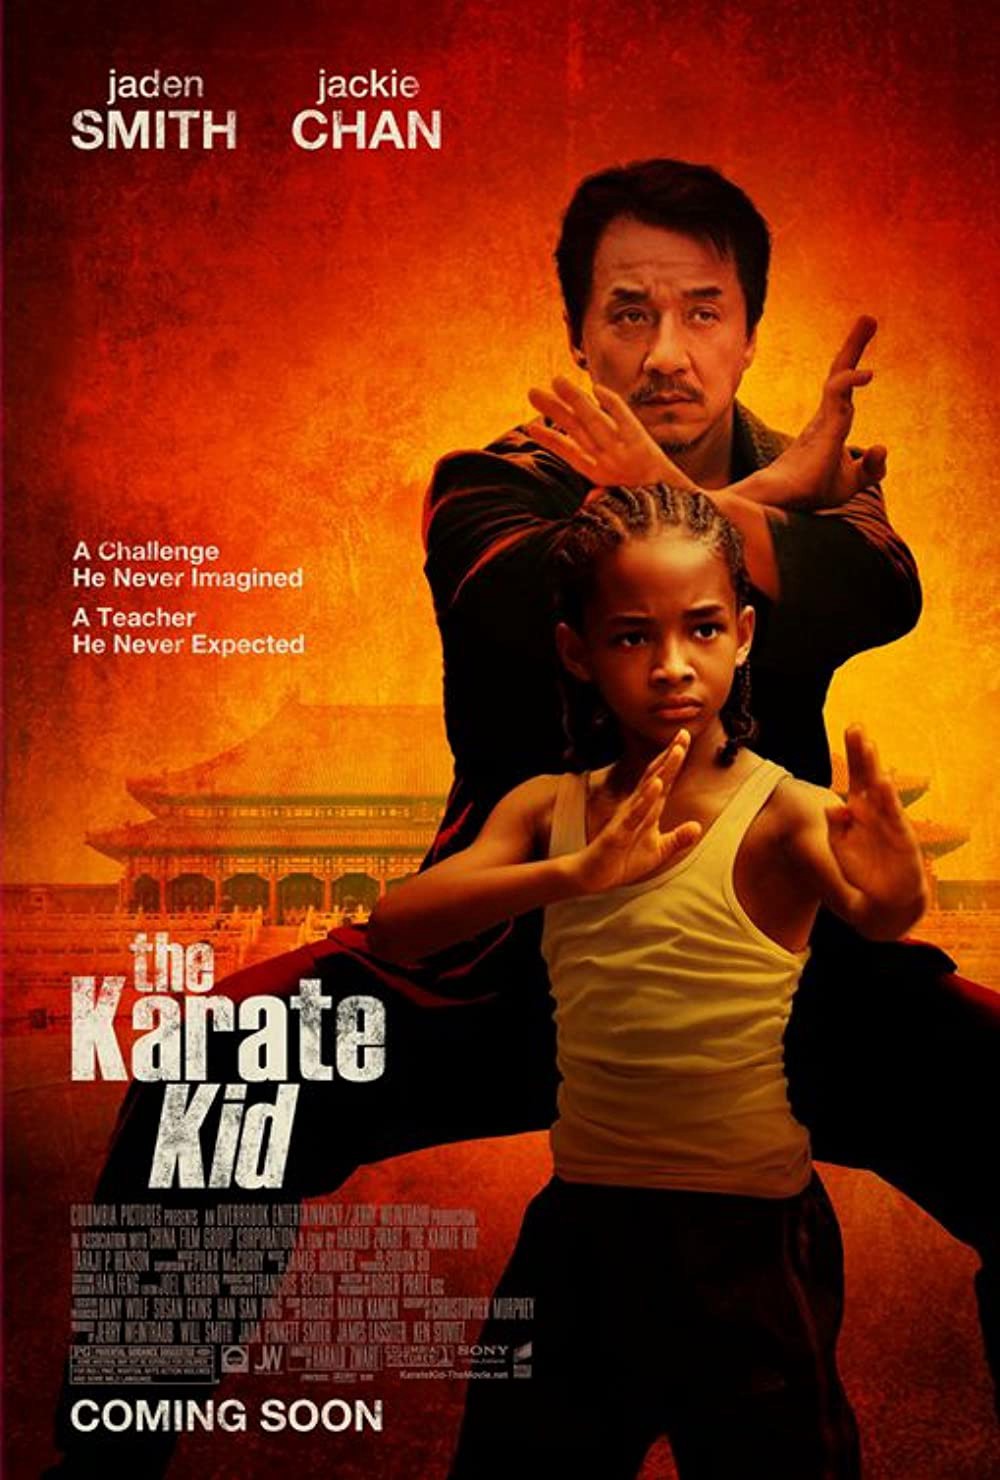 Siêu Nhí Karate 2010